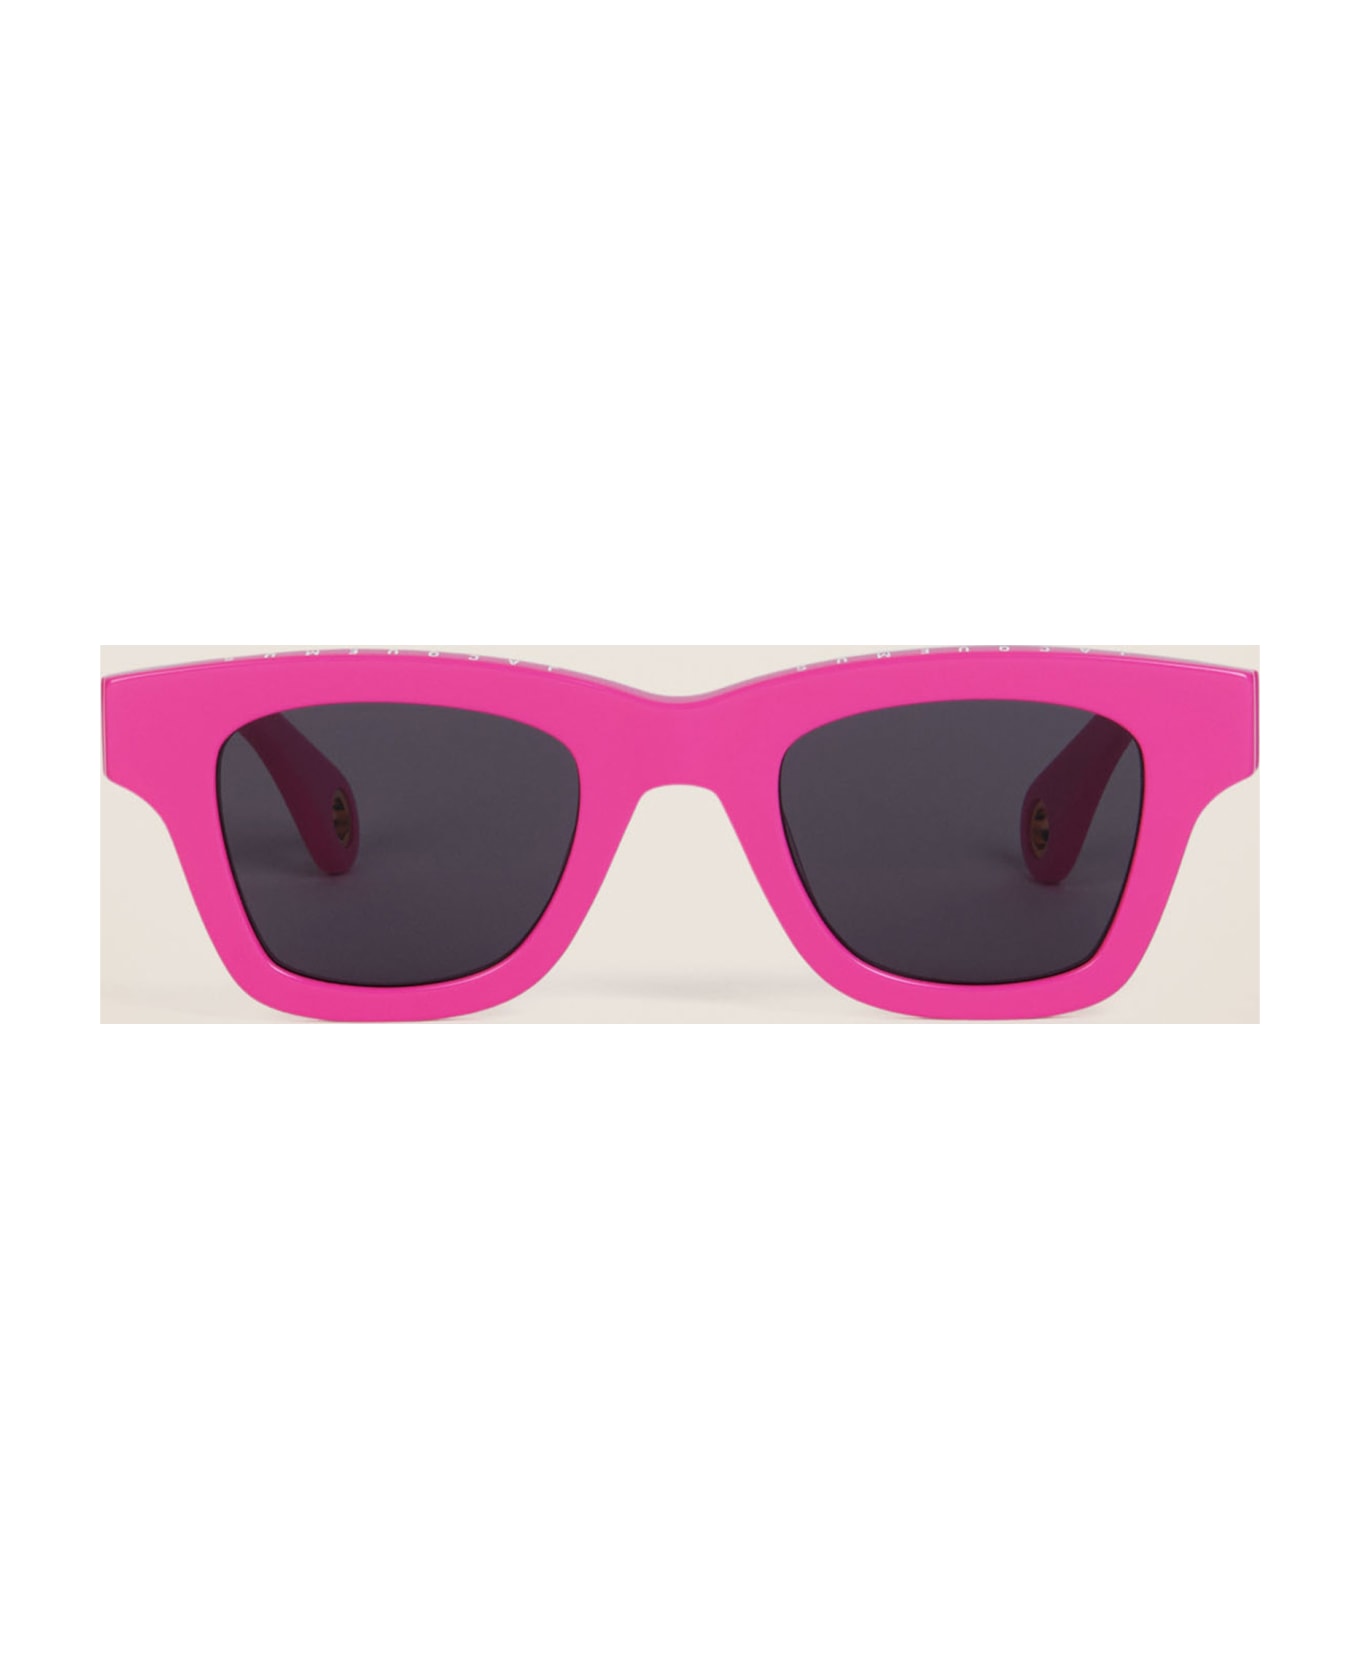 Jacquemus Les Lunettes Nocio - Pink Sunglasses - pink